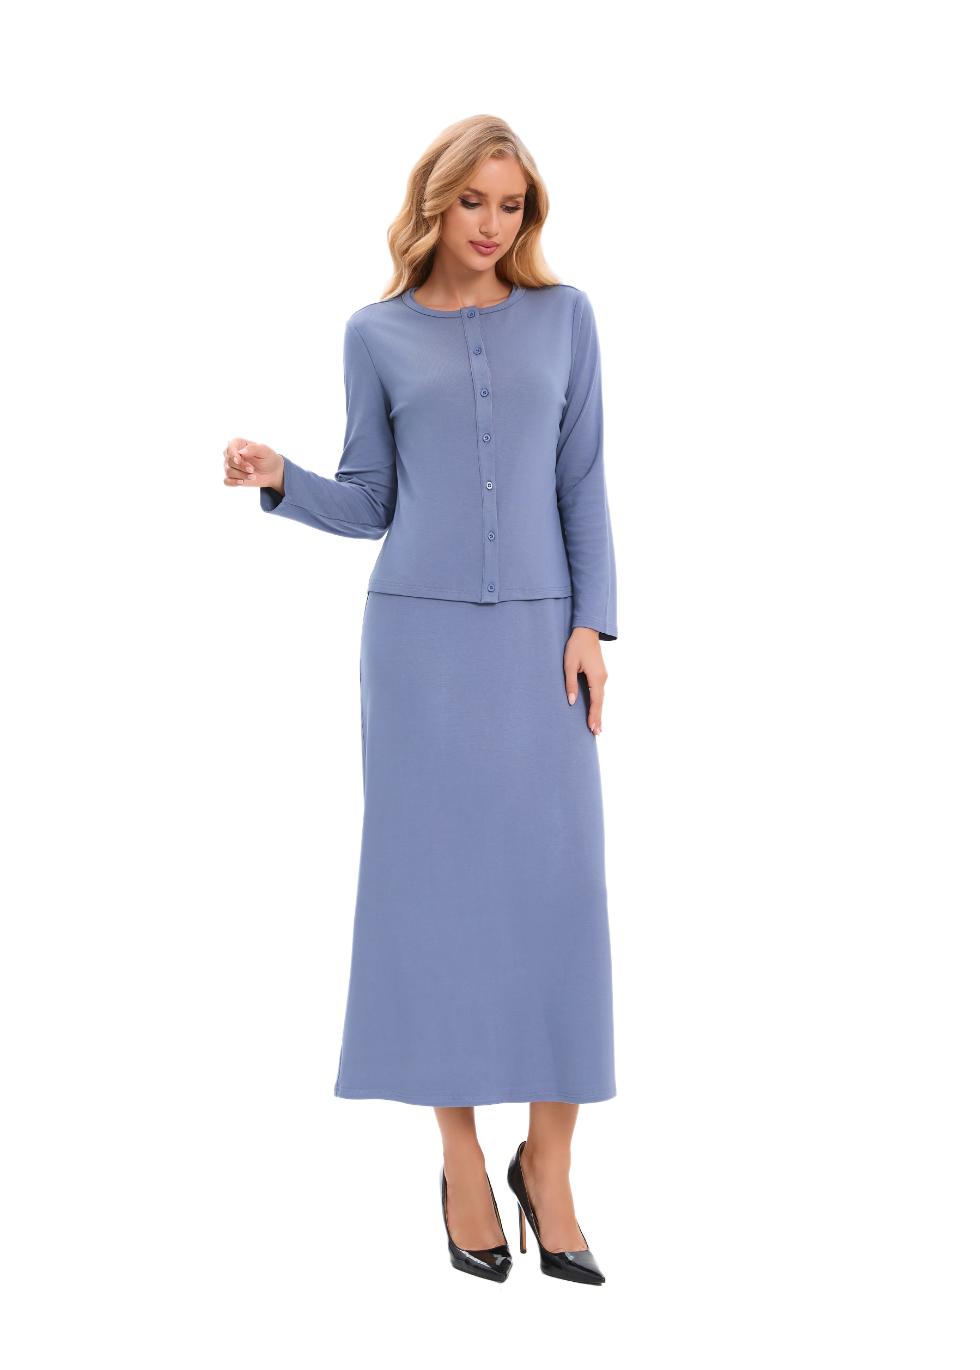 Pastel Blue Sheath Dress & Cardigan Matching Outfit Set